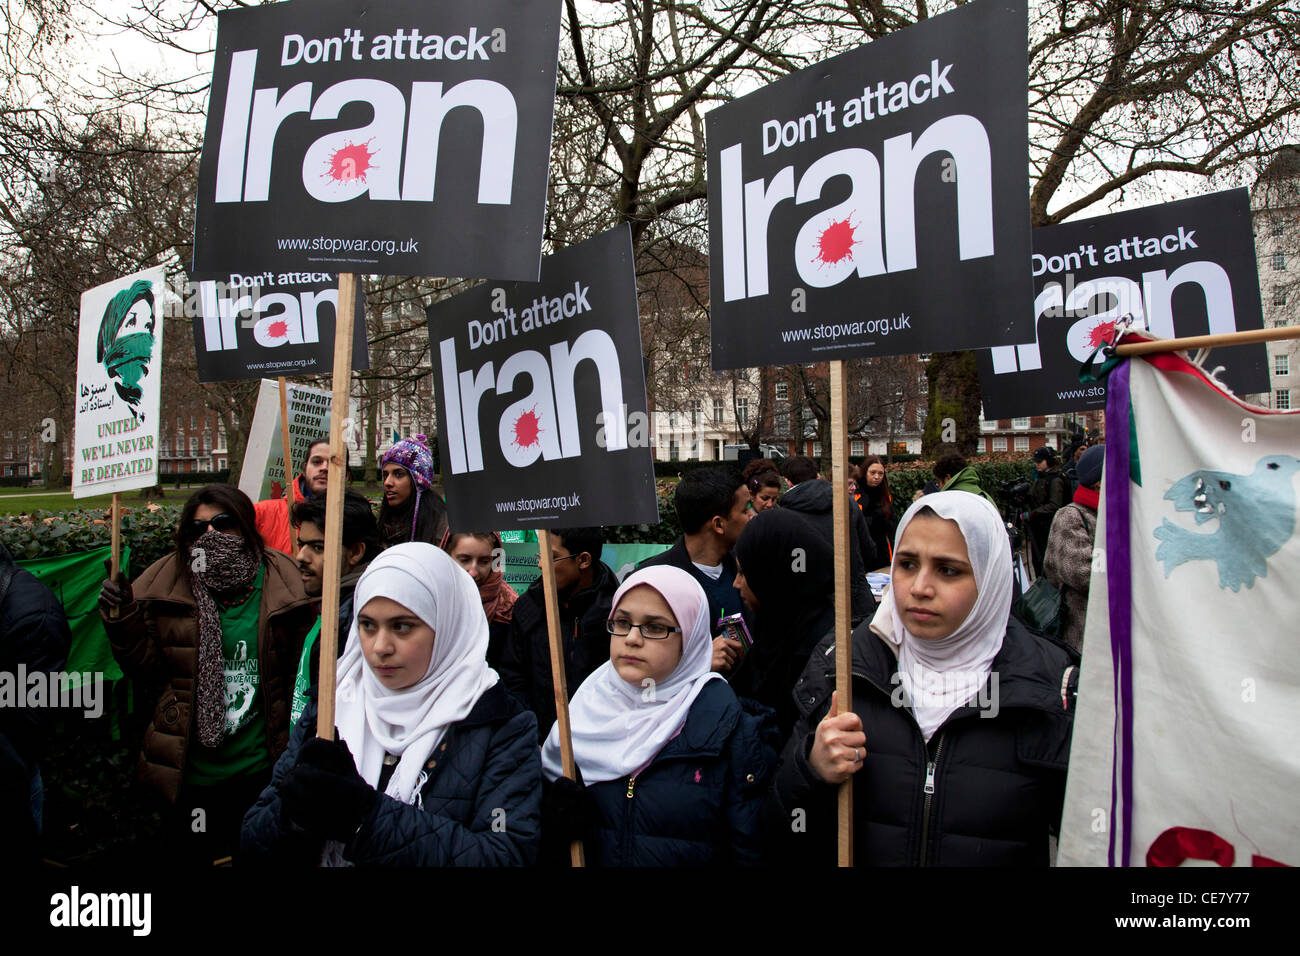 Muslimische Mädchen bei Stop The War Demonstration an der US-Botschaft in London. Freien Iran und anderen Demonstranten Kundgebung gegen Angriffe Stockfoto